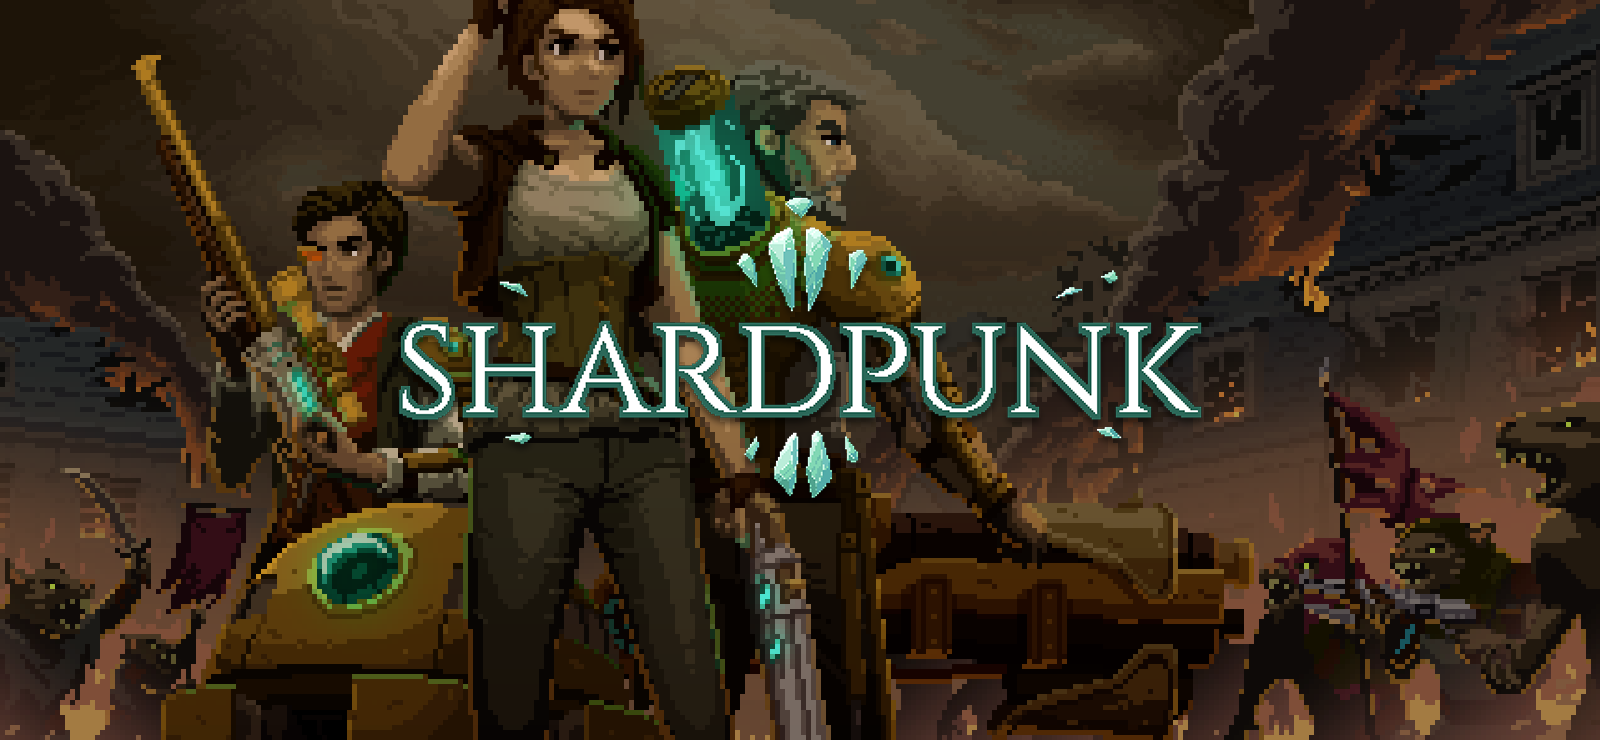 Shardpunk